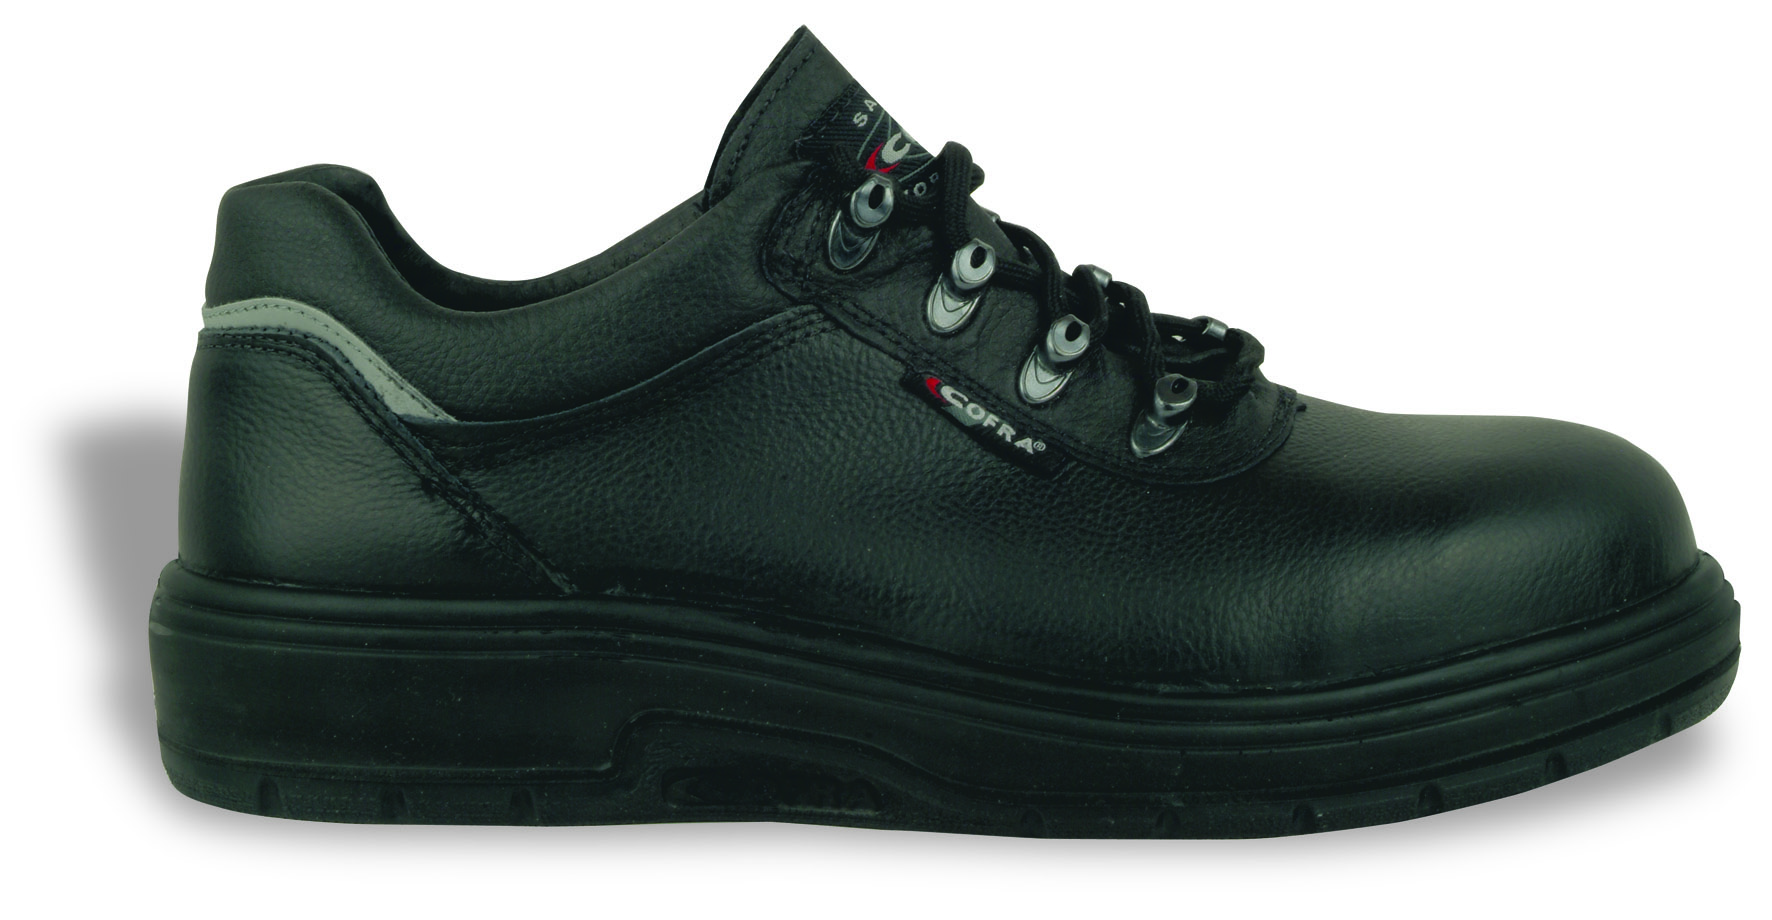 COFRA-Footwear, PETROL S3 HRO HI, Sicherheits-Arbeits-Berufs-Schuhe, Halbschuhe, schwarz